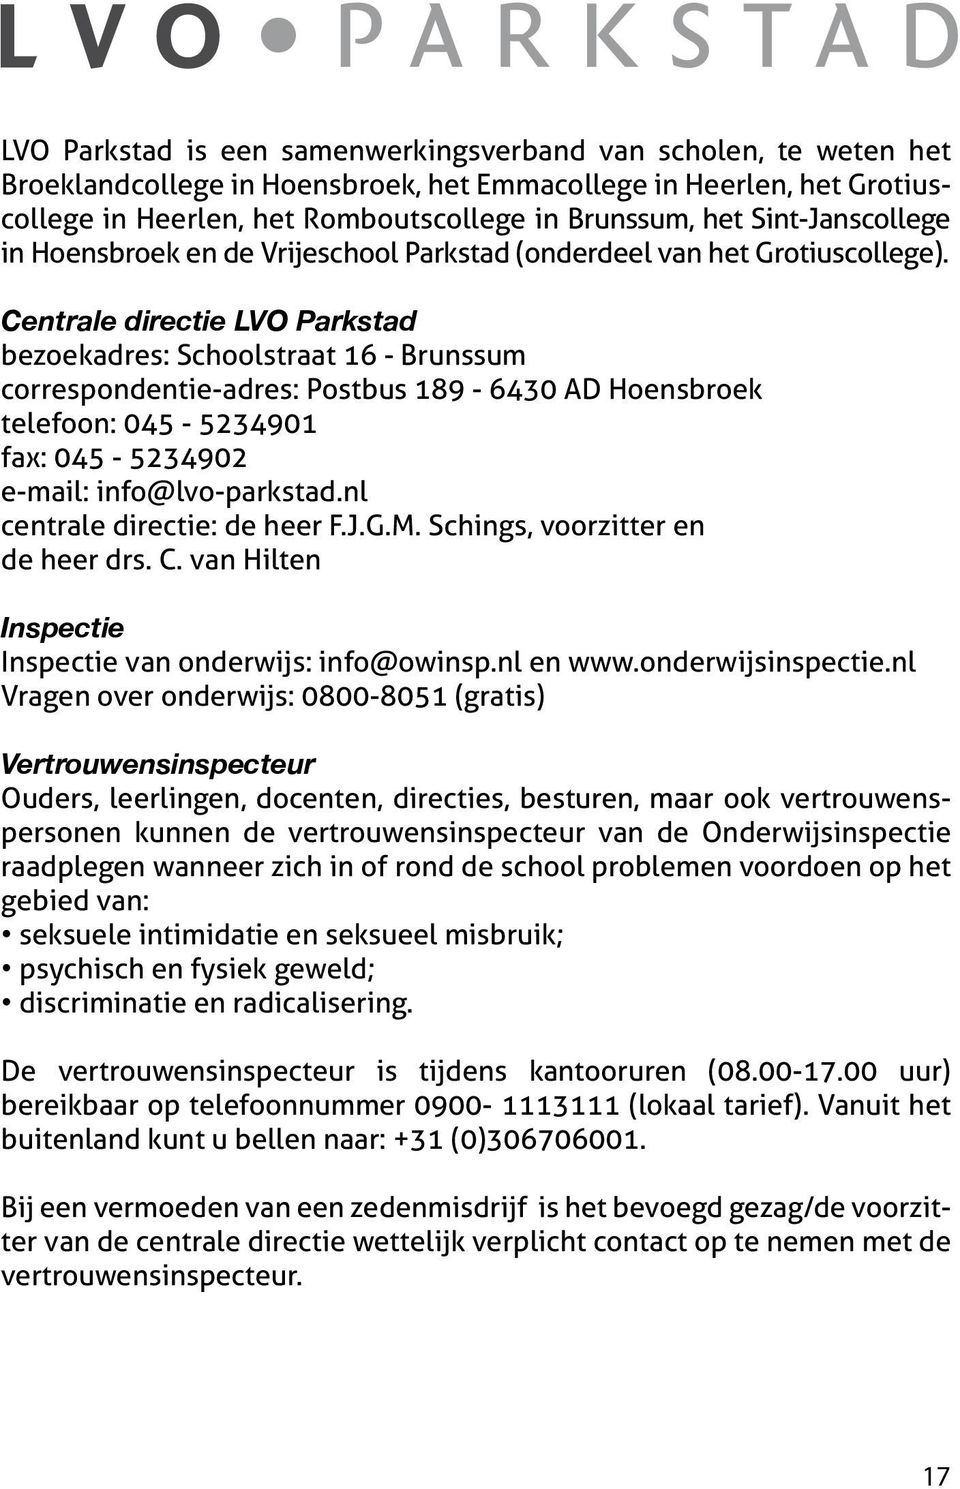 Centrale directie LVO Parkstad bezoekadres: Schoolstraat 16 - Brunssum correspondentie-adres: Postbus 189-6430 AD Hoensbroek telefoon: 045-5234901 fax: 045-5234902 e-mail: info@lvo-parkstad.